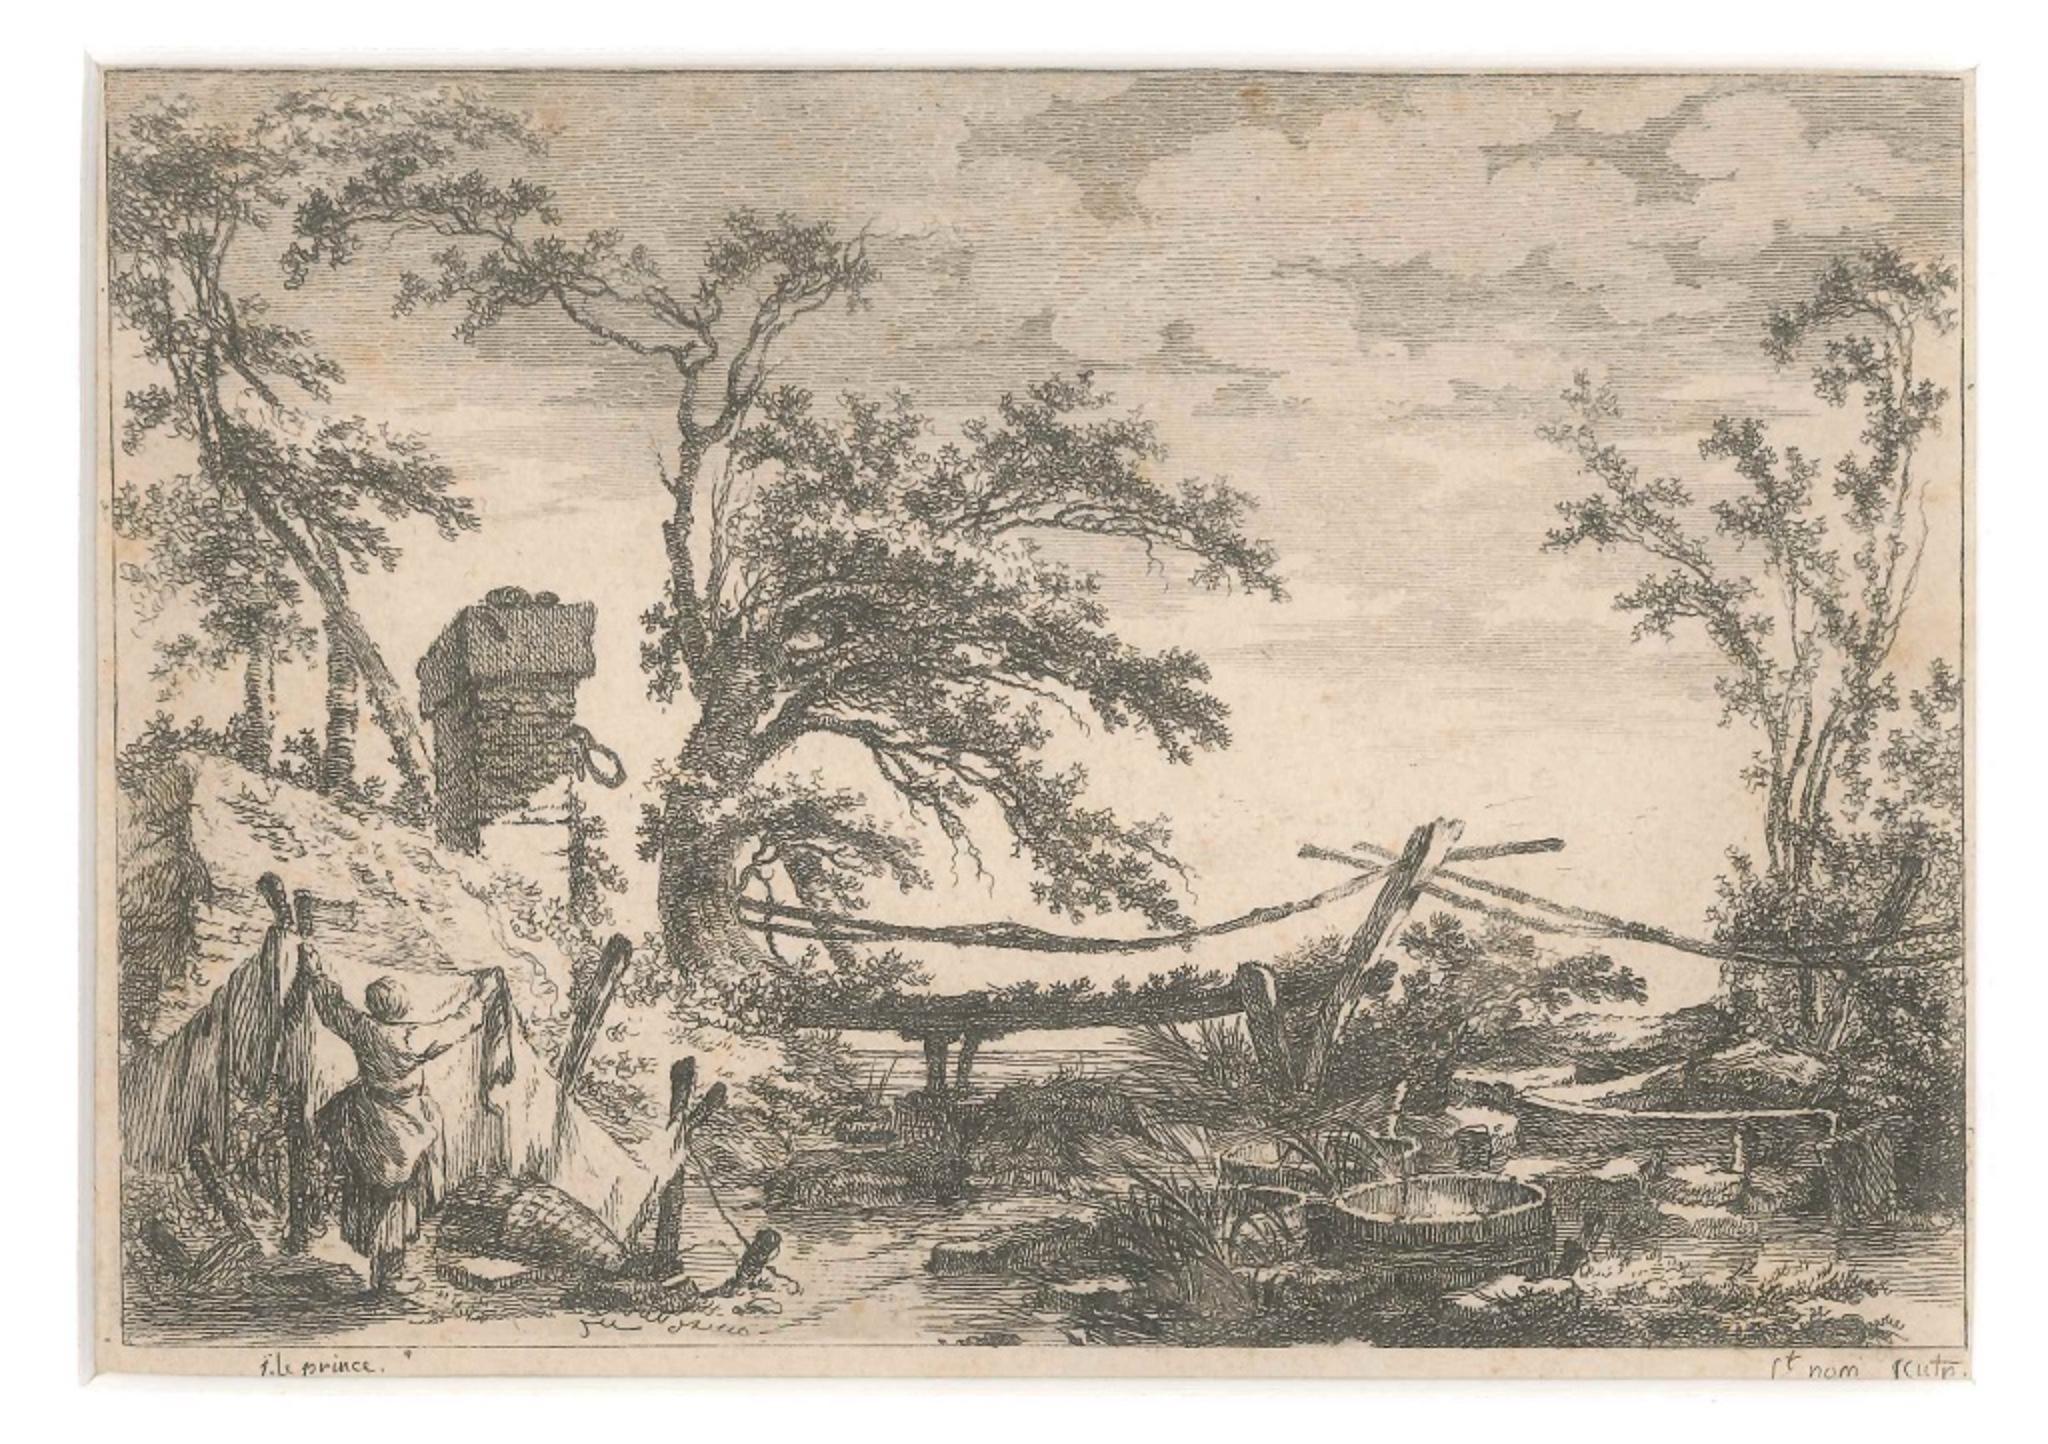 Landscape with Bridge - Etching by J. C. Richard de Saint-Non - 18th Century